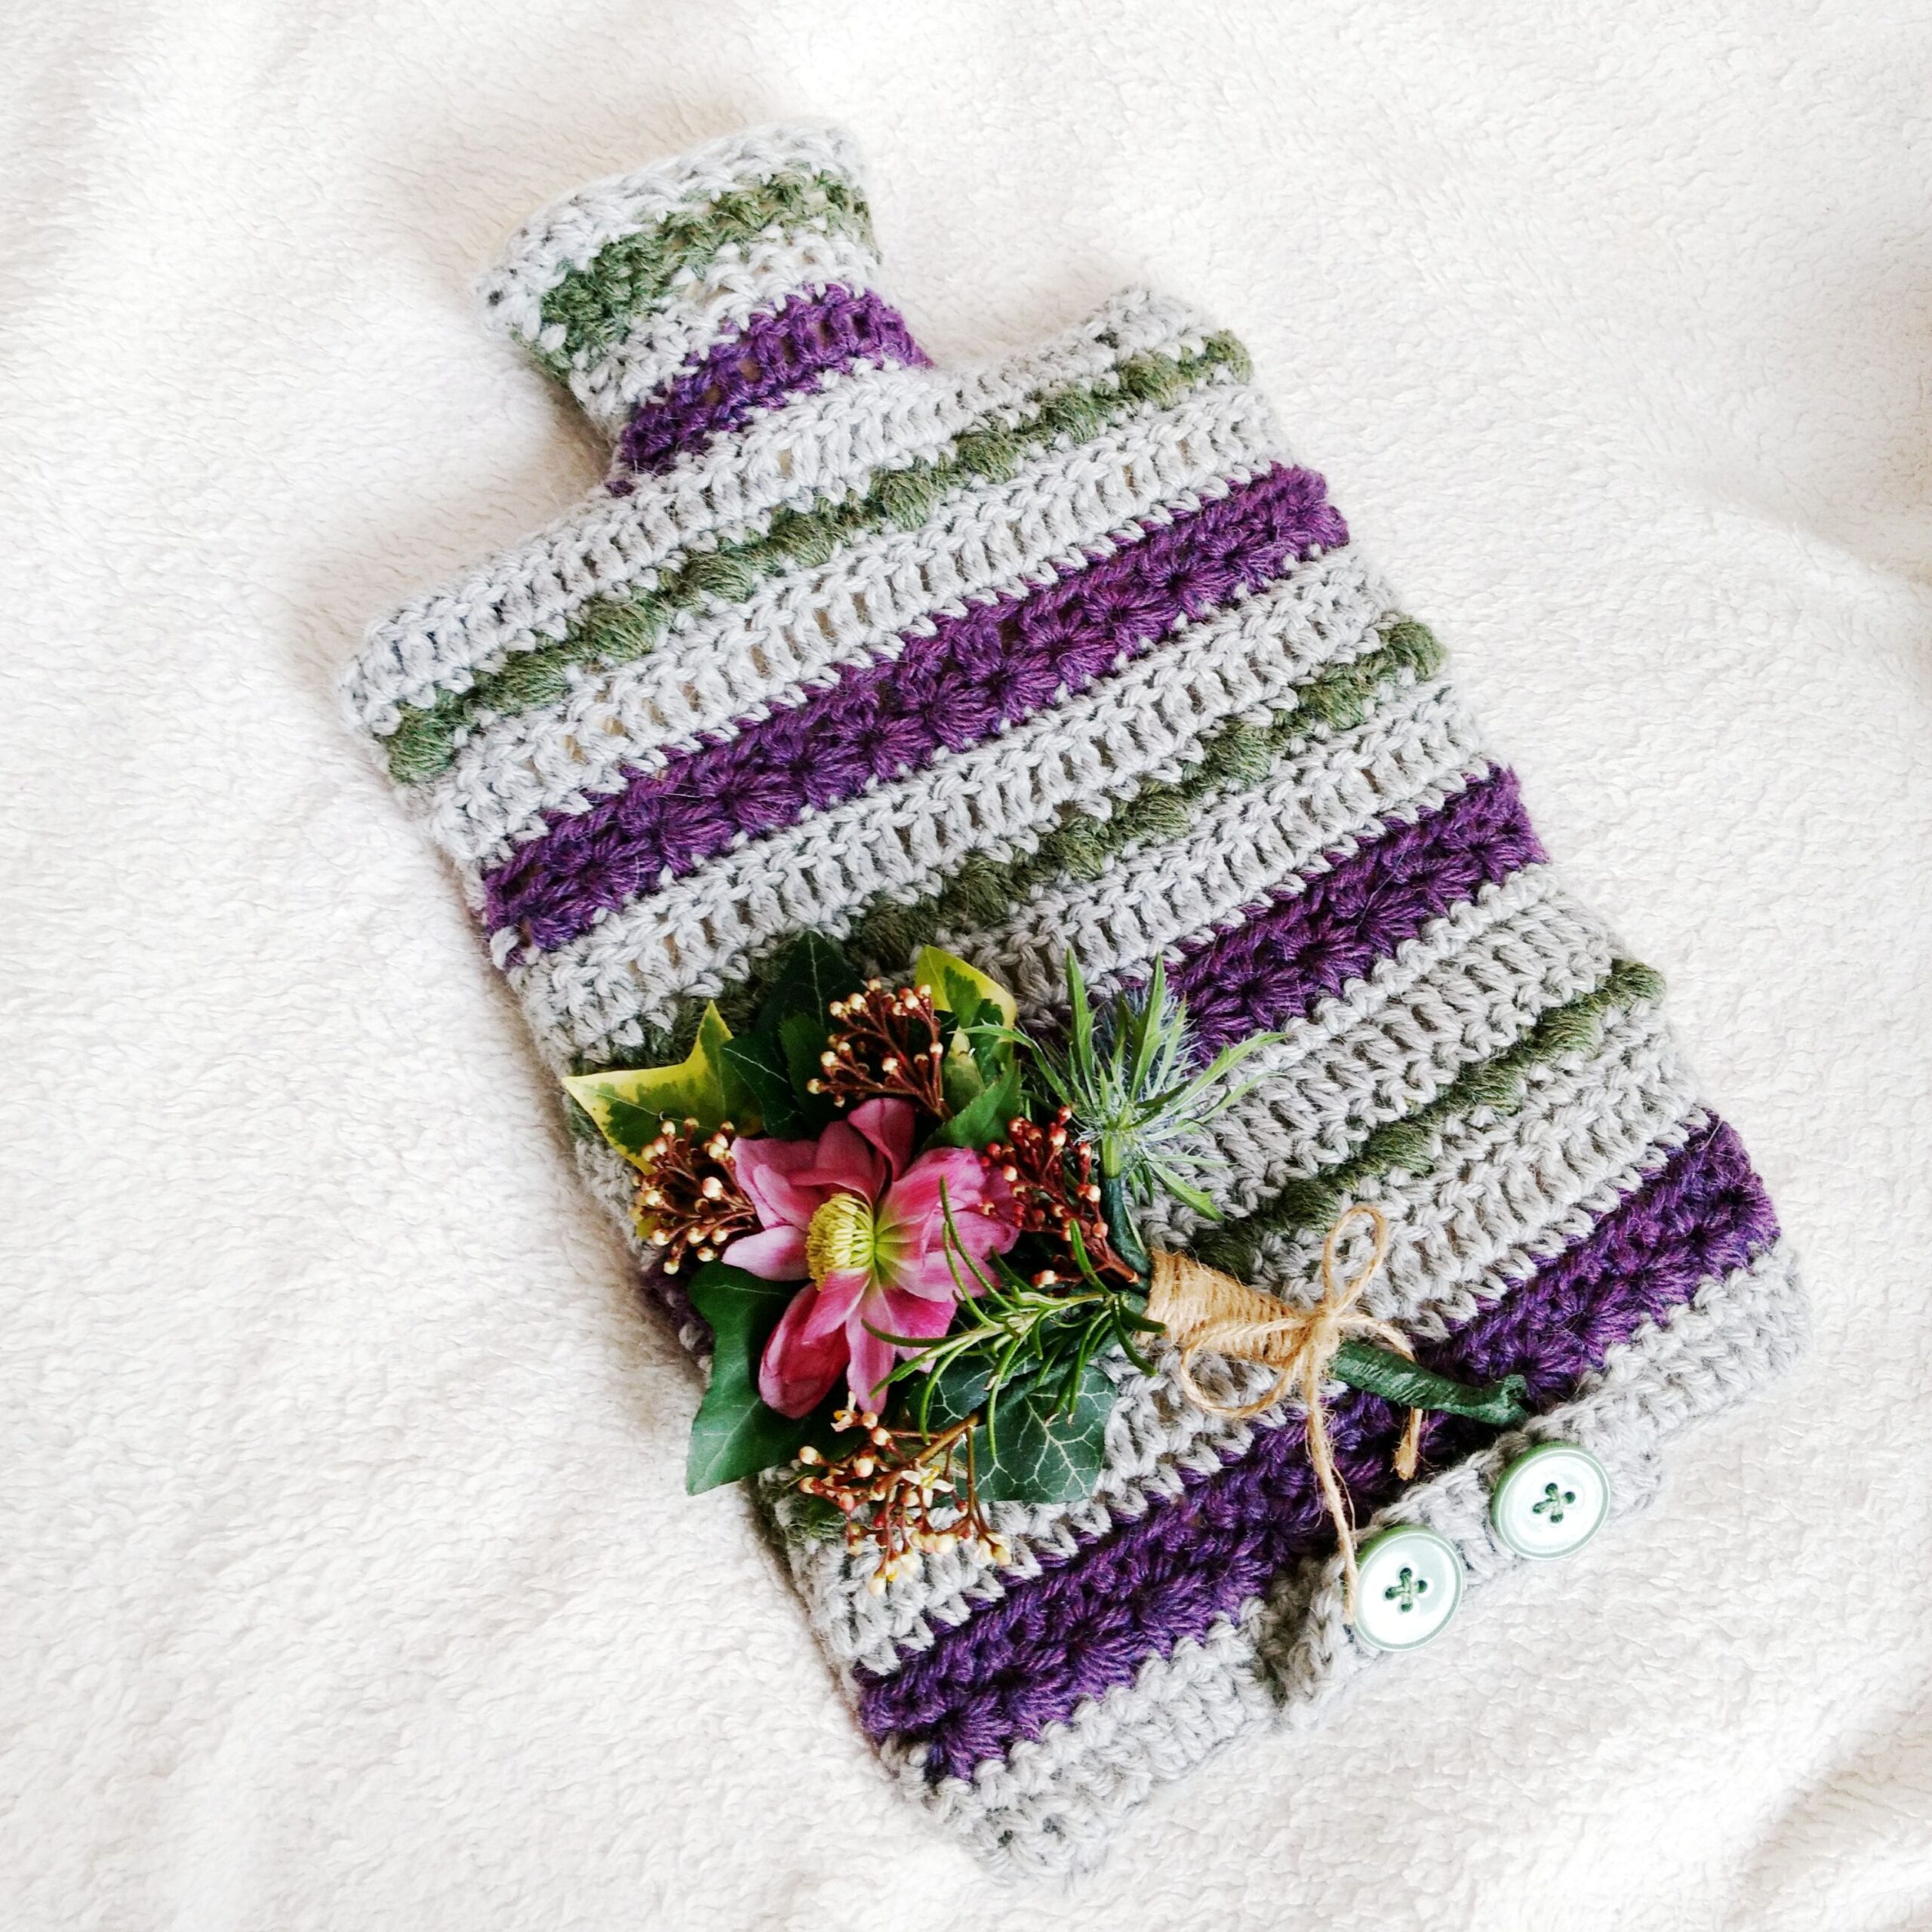 Crochet Hot Water bottle cover - Free crochet pattern - crochet cloudberry